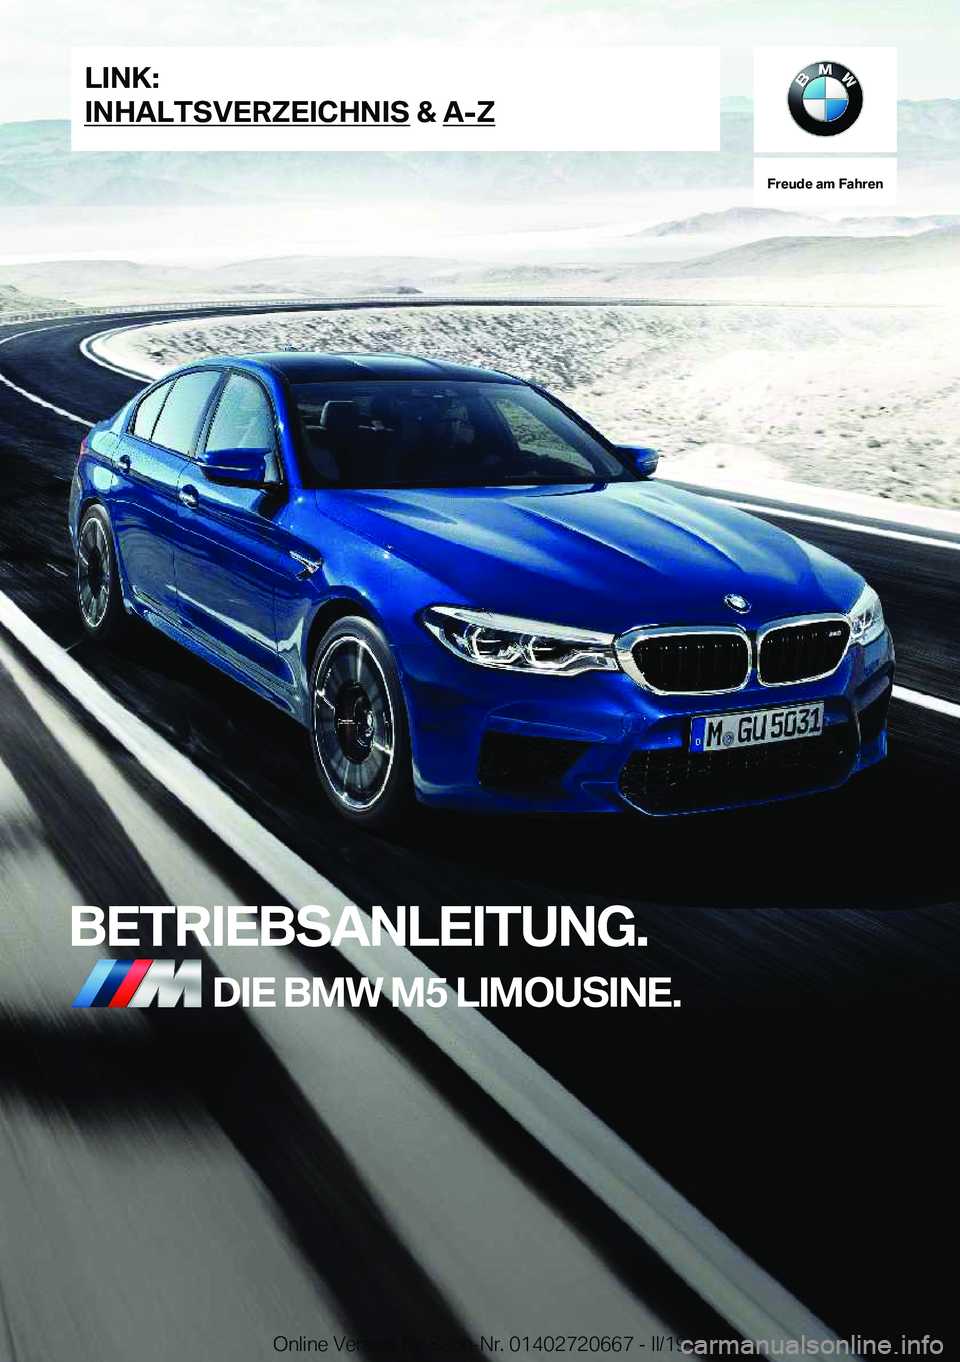 BMW M5 2019  Betriebsanleitungen (in German) �F�r�e�u�d�e��a�m��F�a�h�r�e�n
�B�E�T�R�I�E�B�S�A�N�L�E�I�T�U�N�G�.�D�I�E��B�M�W��M�5��L�I�M�O�U�S�I�N�E�.�L�I�N�K�:
�I�N�H�A�L�T�S�V�E�R�Z�E�I�C�H�N�I�S��&��A�-�Z�O�n�l�i�n�e��V�e�r�s�i�o�n�